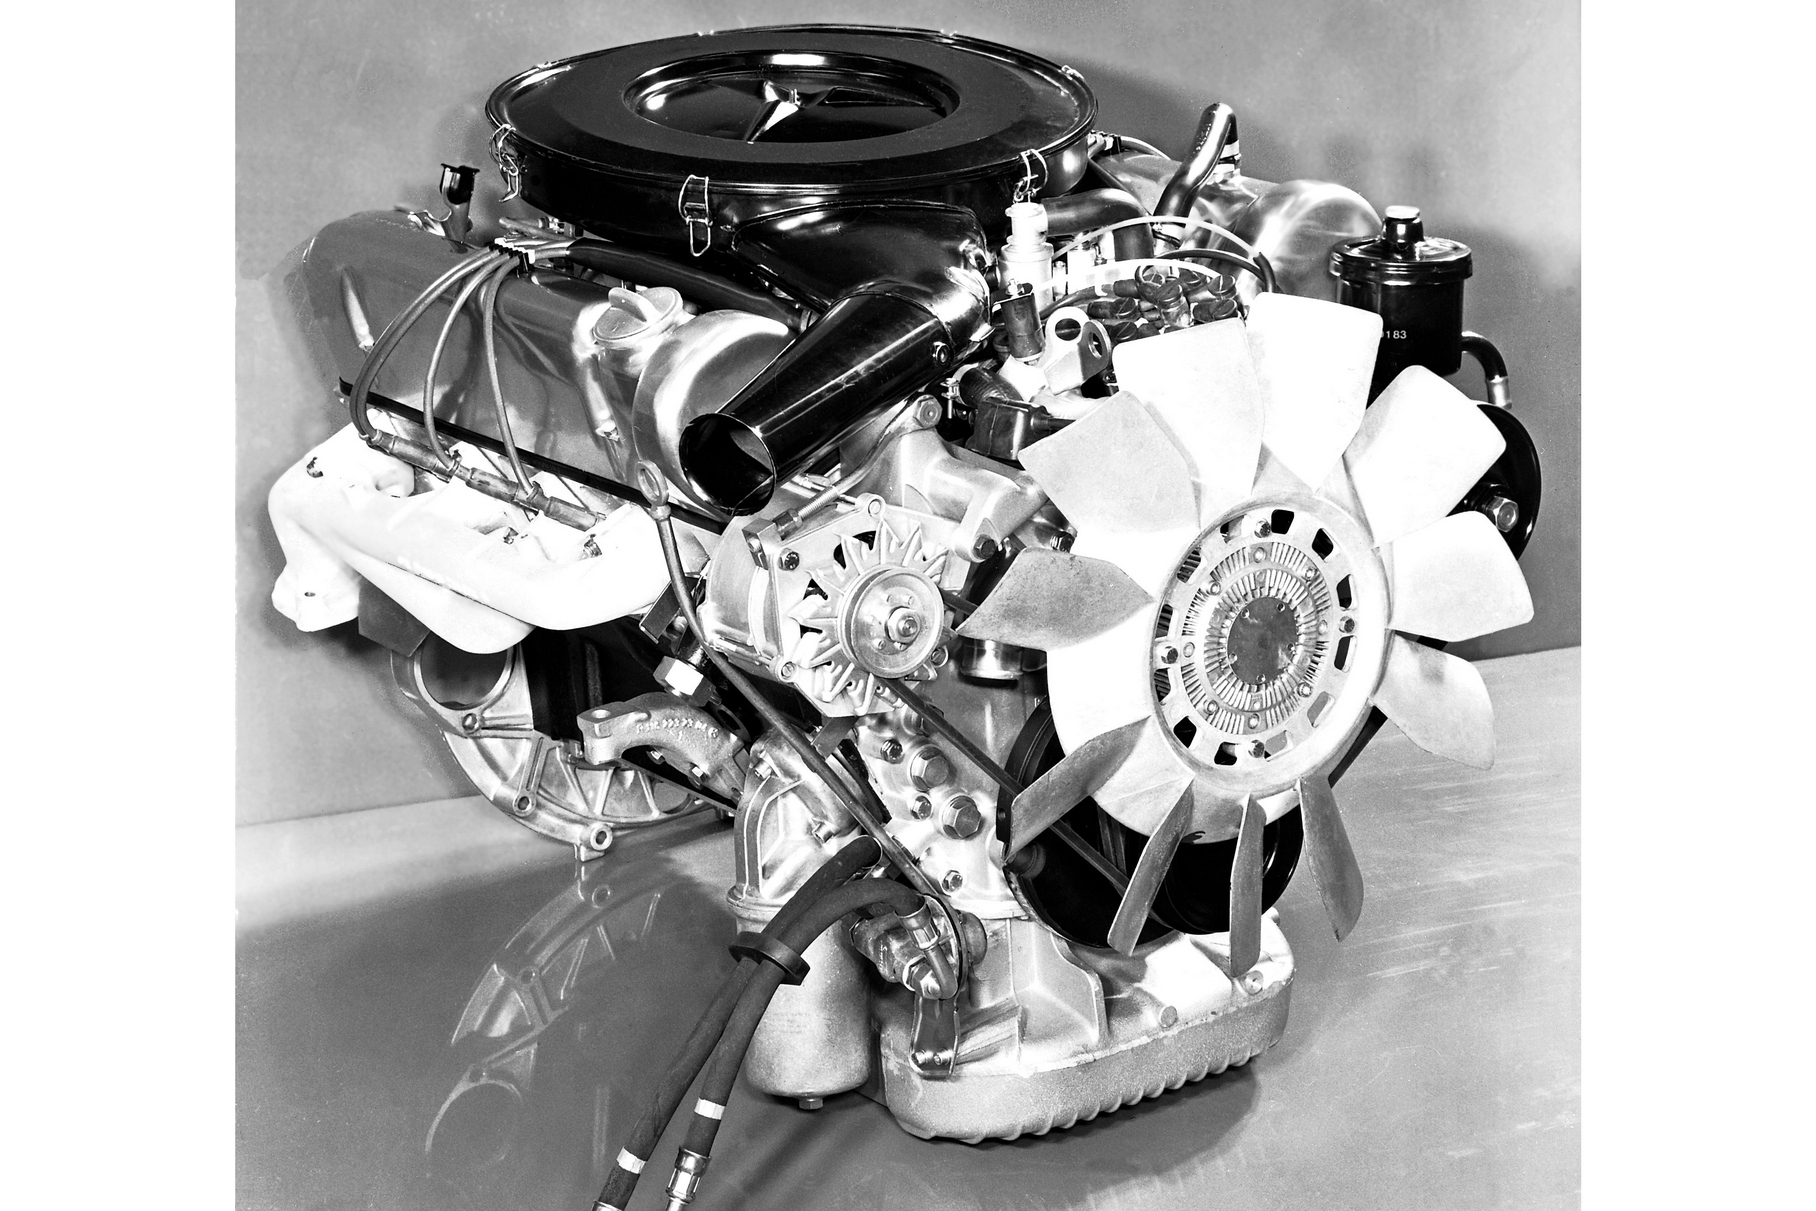 Двигатель M117 увеличенного до 4,5 литров объёма первоначально предназначался для рынка США. Ведь из-за строгих экологических норм машины для Америки отличались пониженной мощностью, а прибавка объёма позволяла отыграть потери.